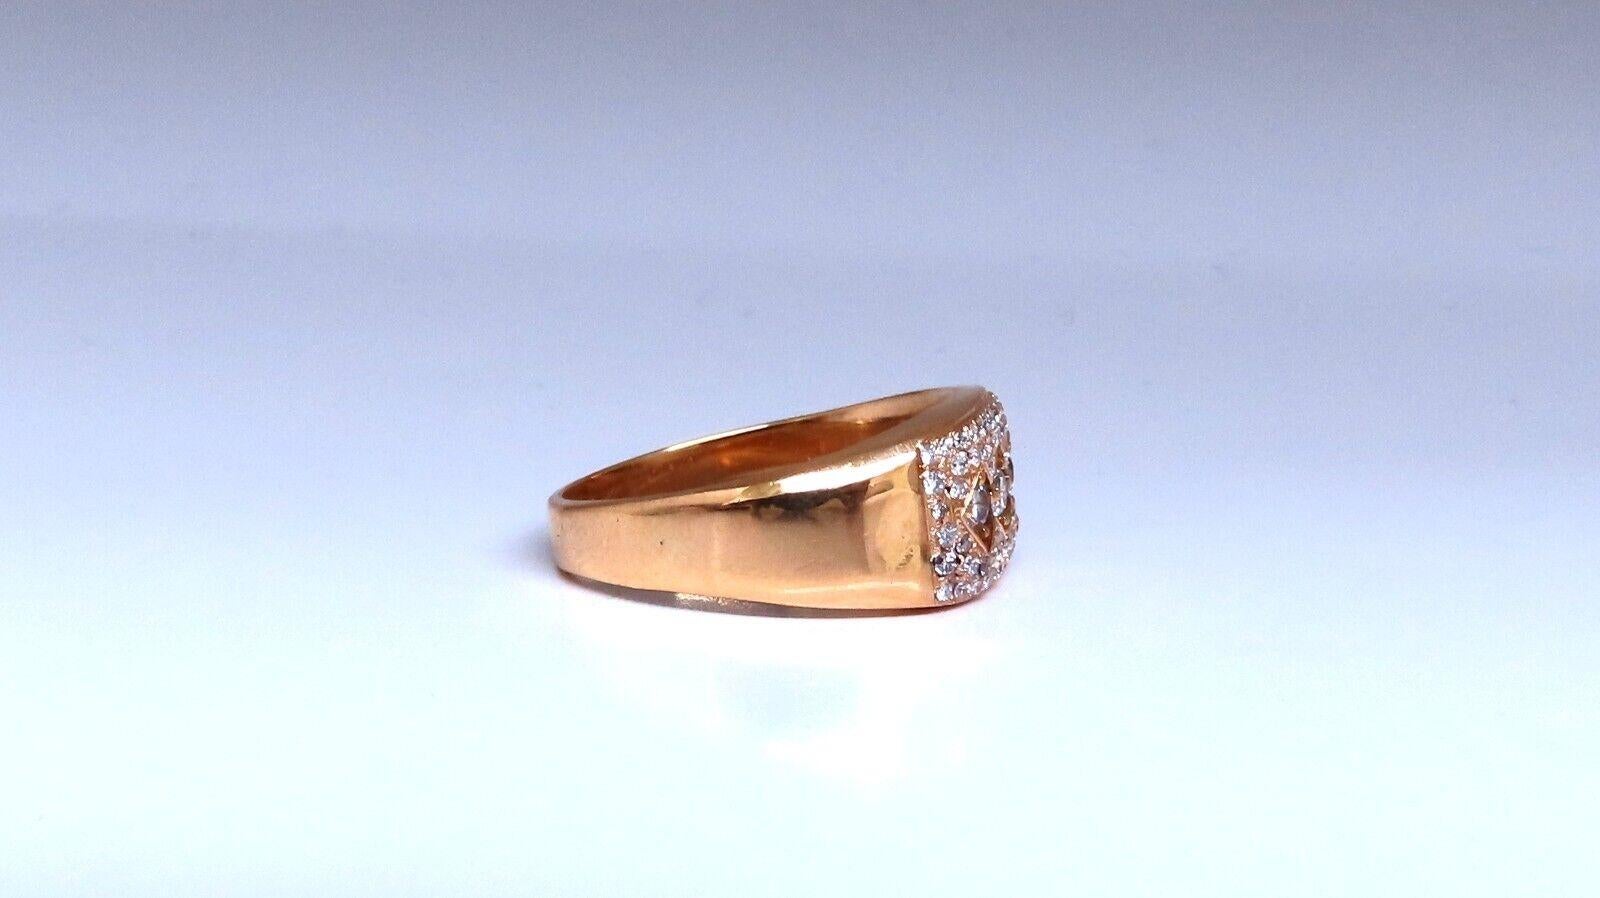 .60ct Natural Round Cut Diamond unisex mens Ring

Si-1 clarté H couleur.

Or jaune 14kt

6,4 grammes

Profondeur : 9 mm

Taille actuelle de la bague : 10.25

Peut être redimensionné professionnellement, veuillez vous renseigner.

